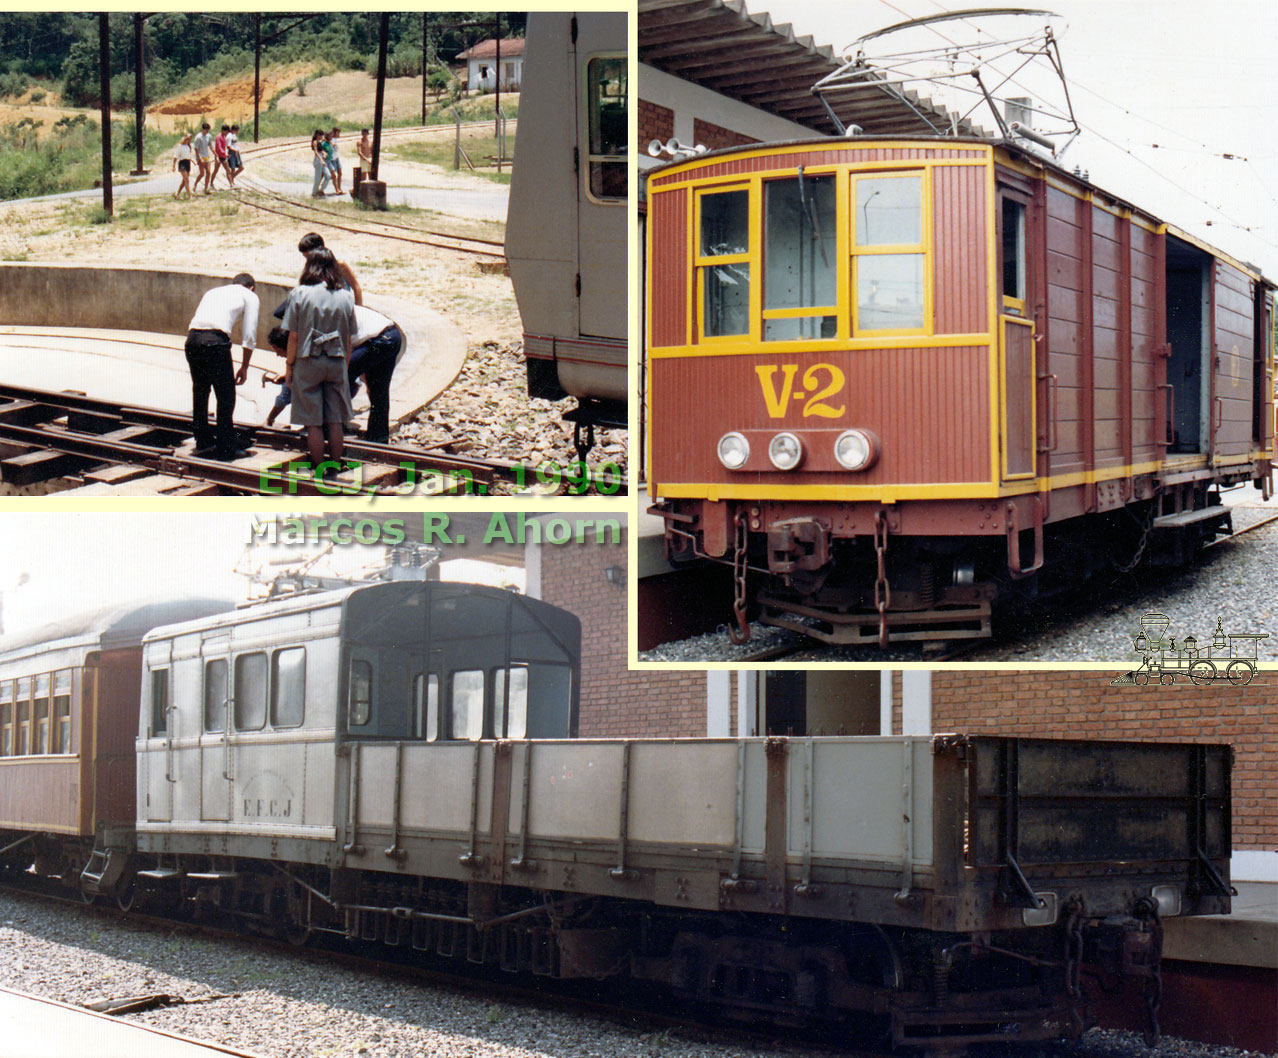 1 - Quebra do cadeado do girador em Santo Antônio do Pinhal; 2 - Vagão autopropelido V2 em Pindamonhangaba, preparando-se para levar a turma de linha ao local do descarrilamento; 3 - Gôndola G1, que tracionava o trem de subúrbio de Campos do Jordão em 1990